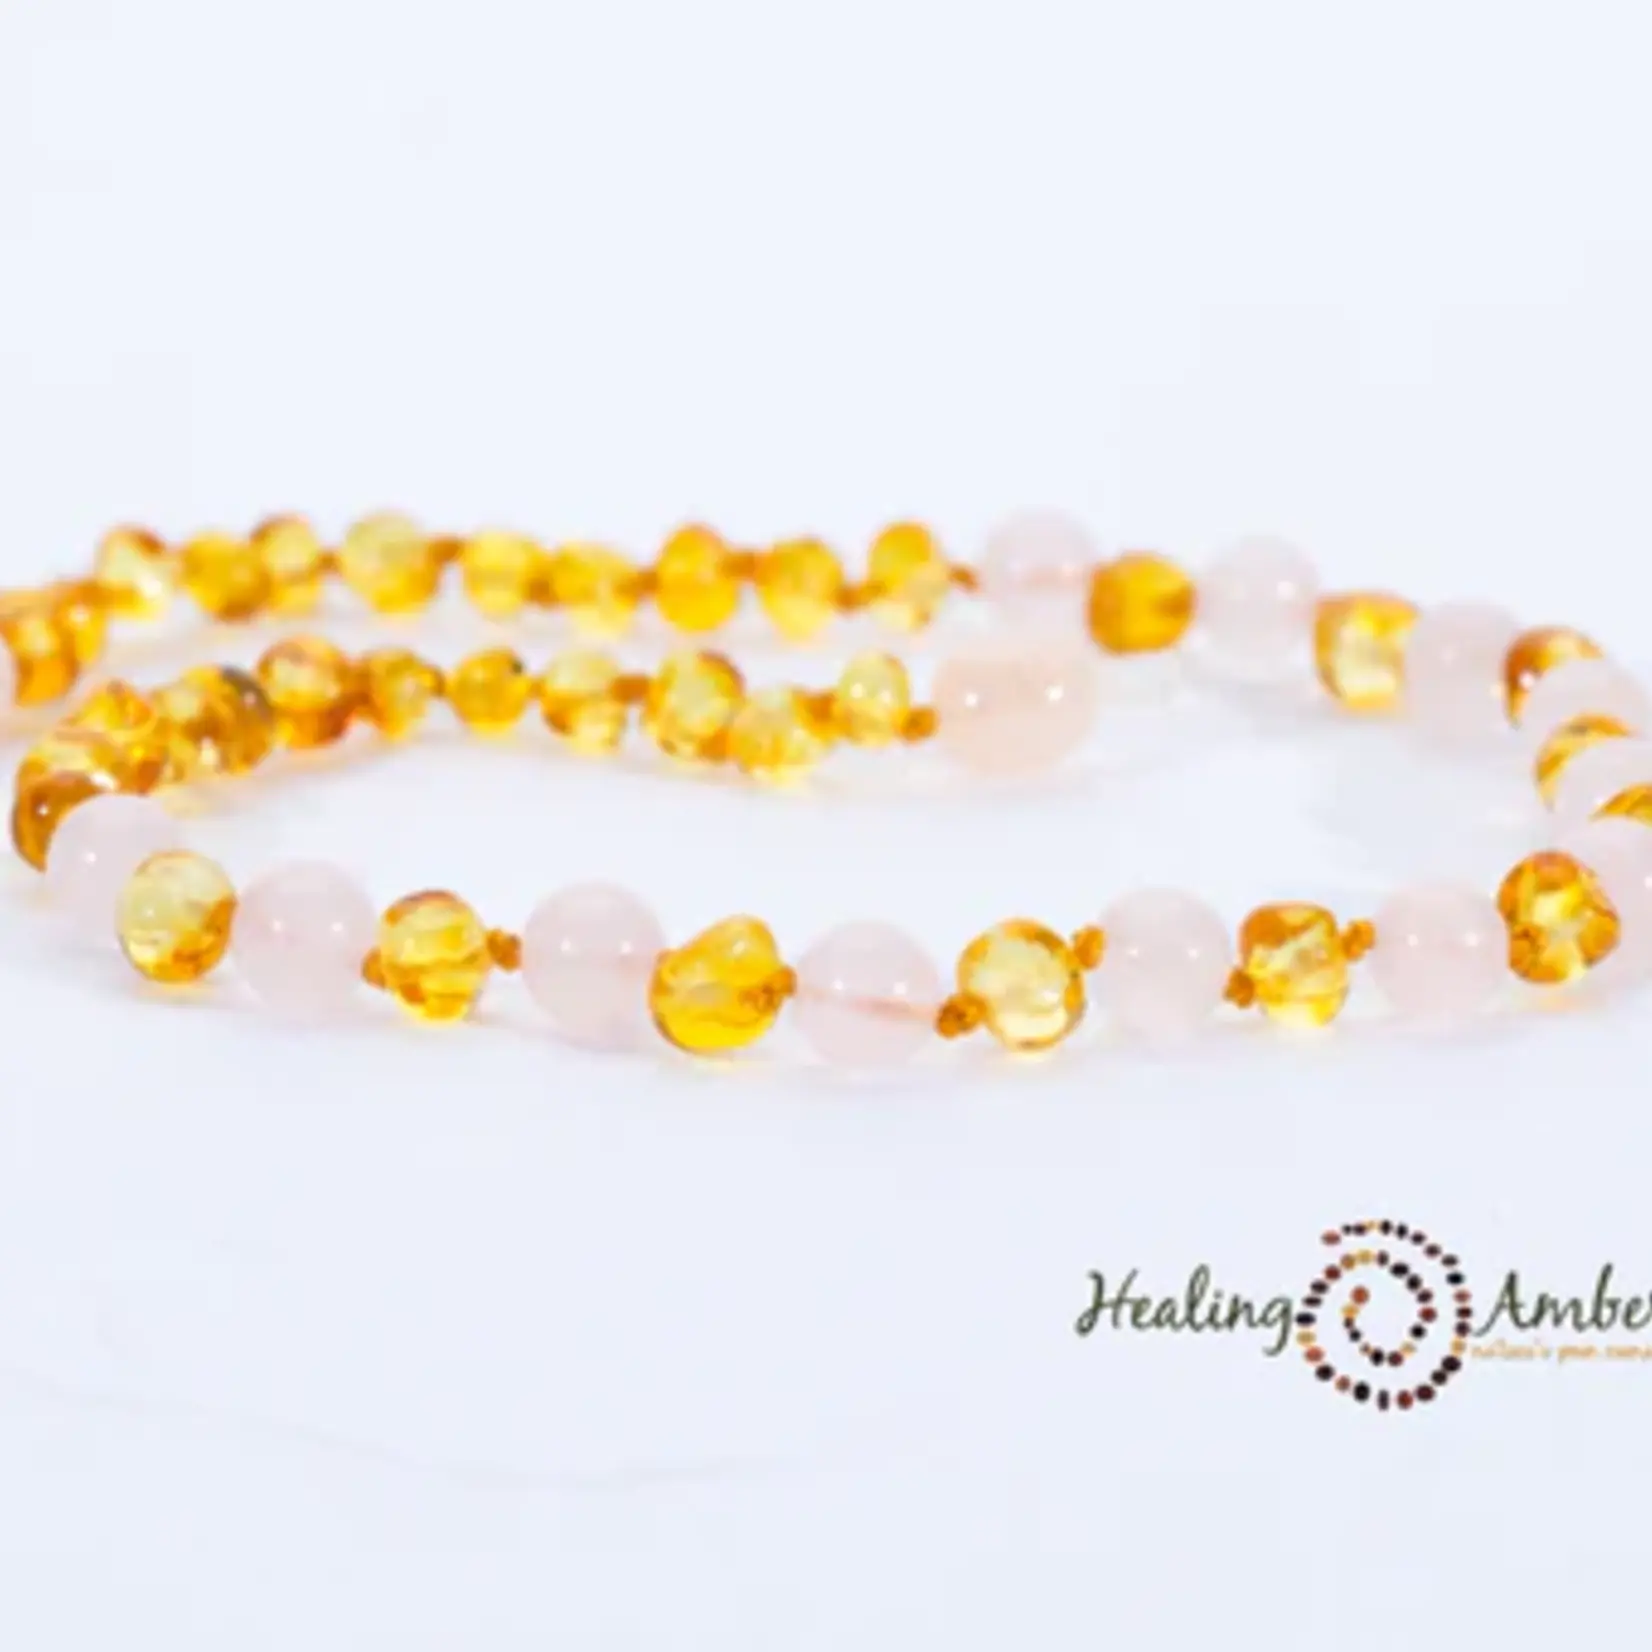 Healing Amber Healing Amber Gemstone Necklace Gold Amber/Rose